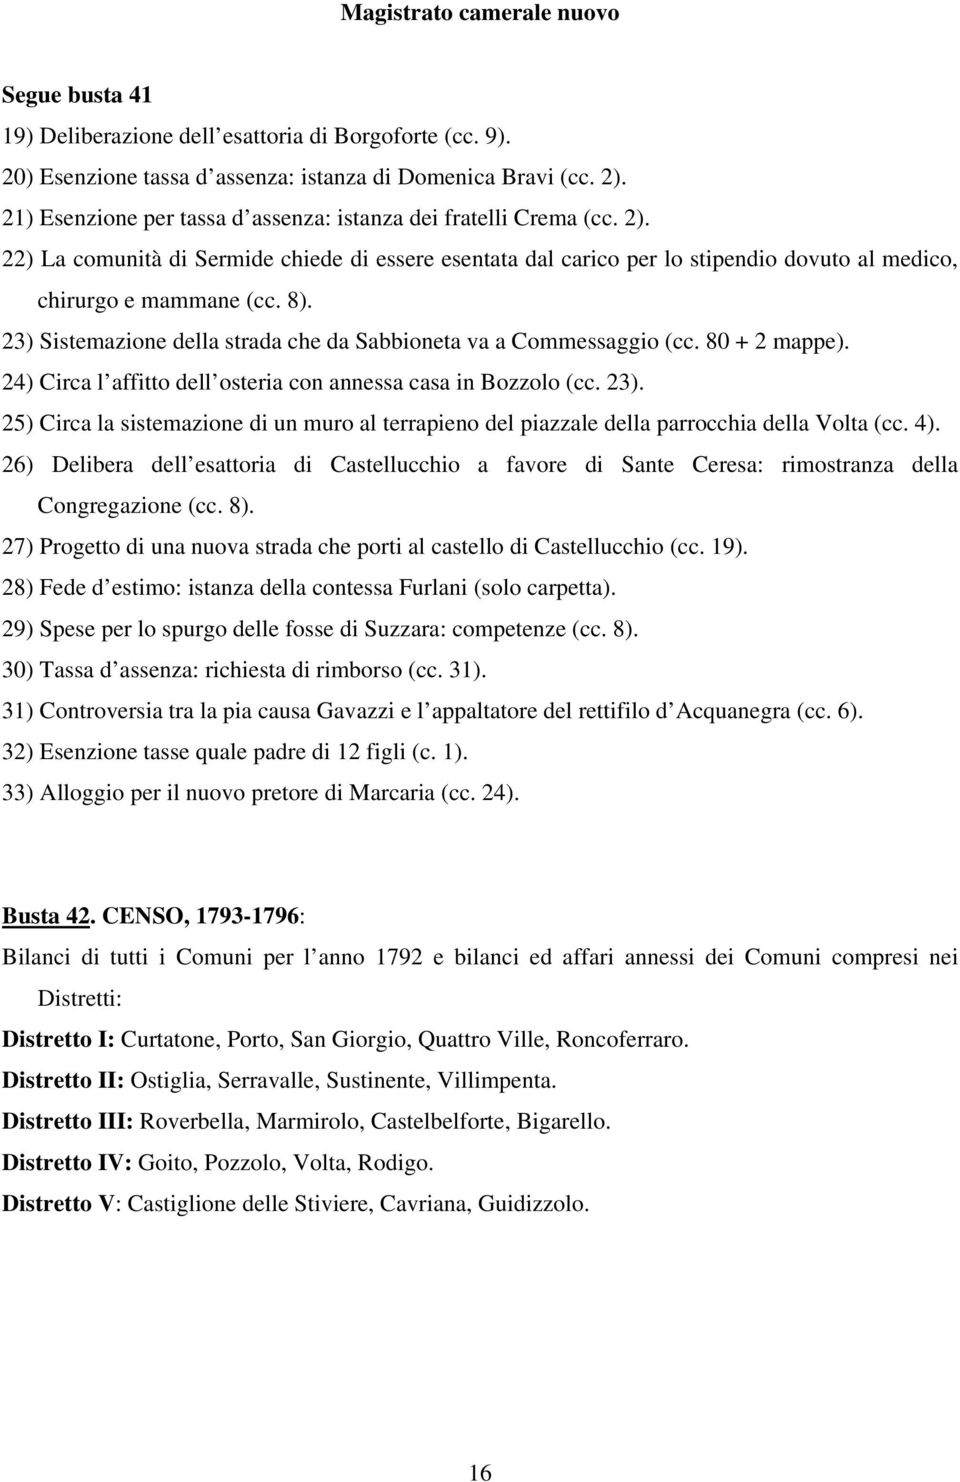 23) Sistemazione della strada che da Sabbioneta va a Commessaggio (cc. 80 + 2 mappe). 24) Circa l affitto dell osteria con annessa casa in Bozzolo (cc. 23).